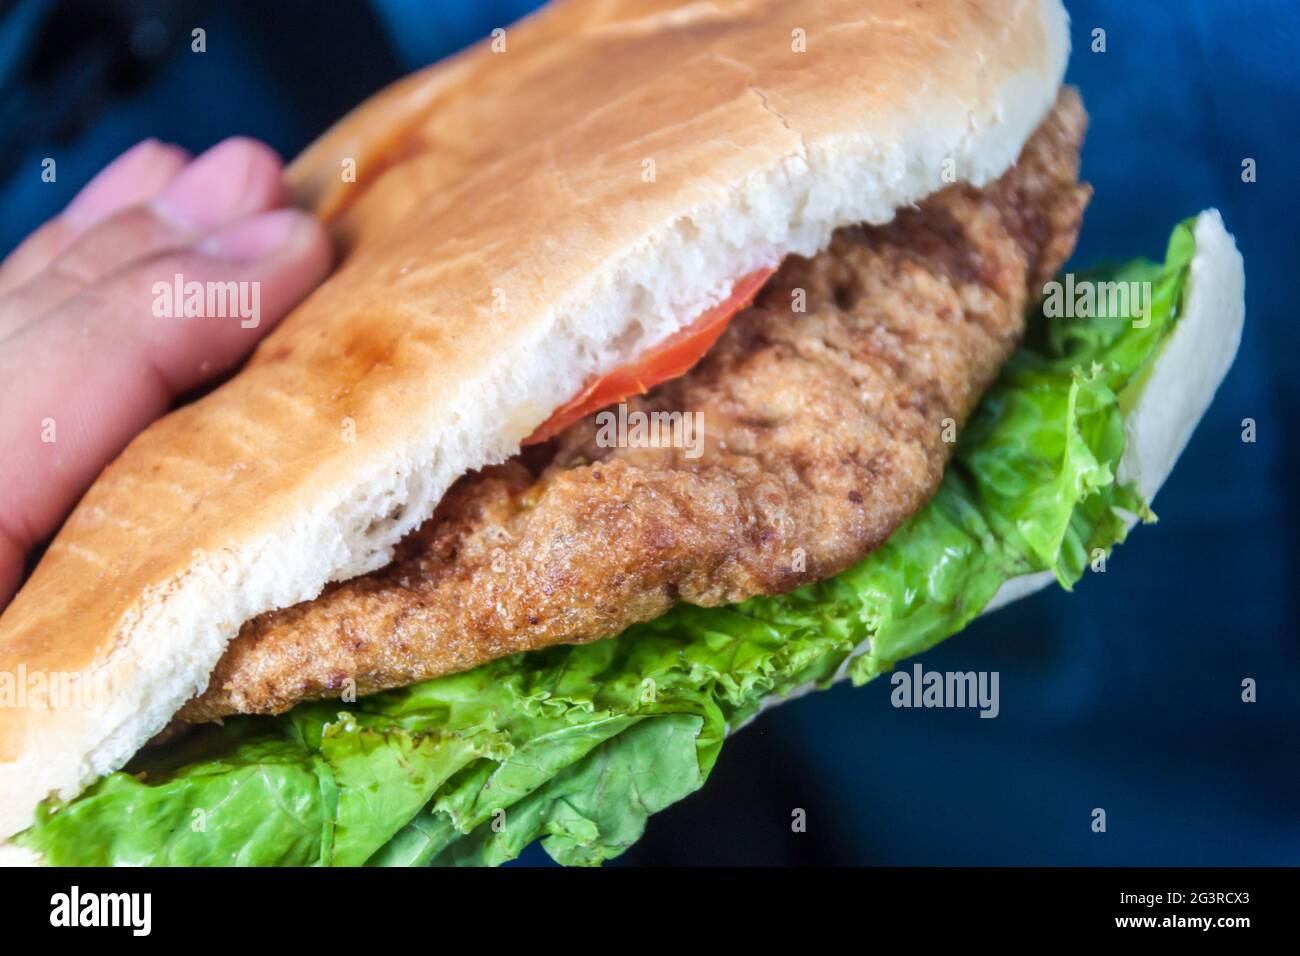 Sandwich avec de la viande panée appelée Milanesa, restauration rapide typique en Uruguay Banque D'Images